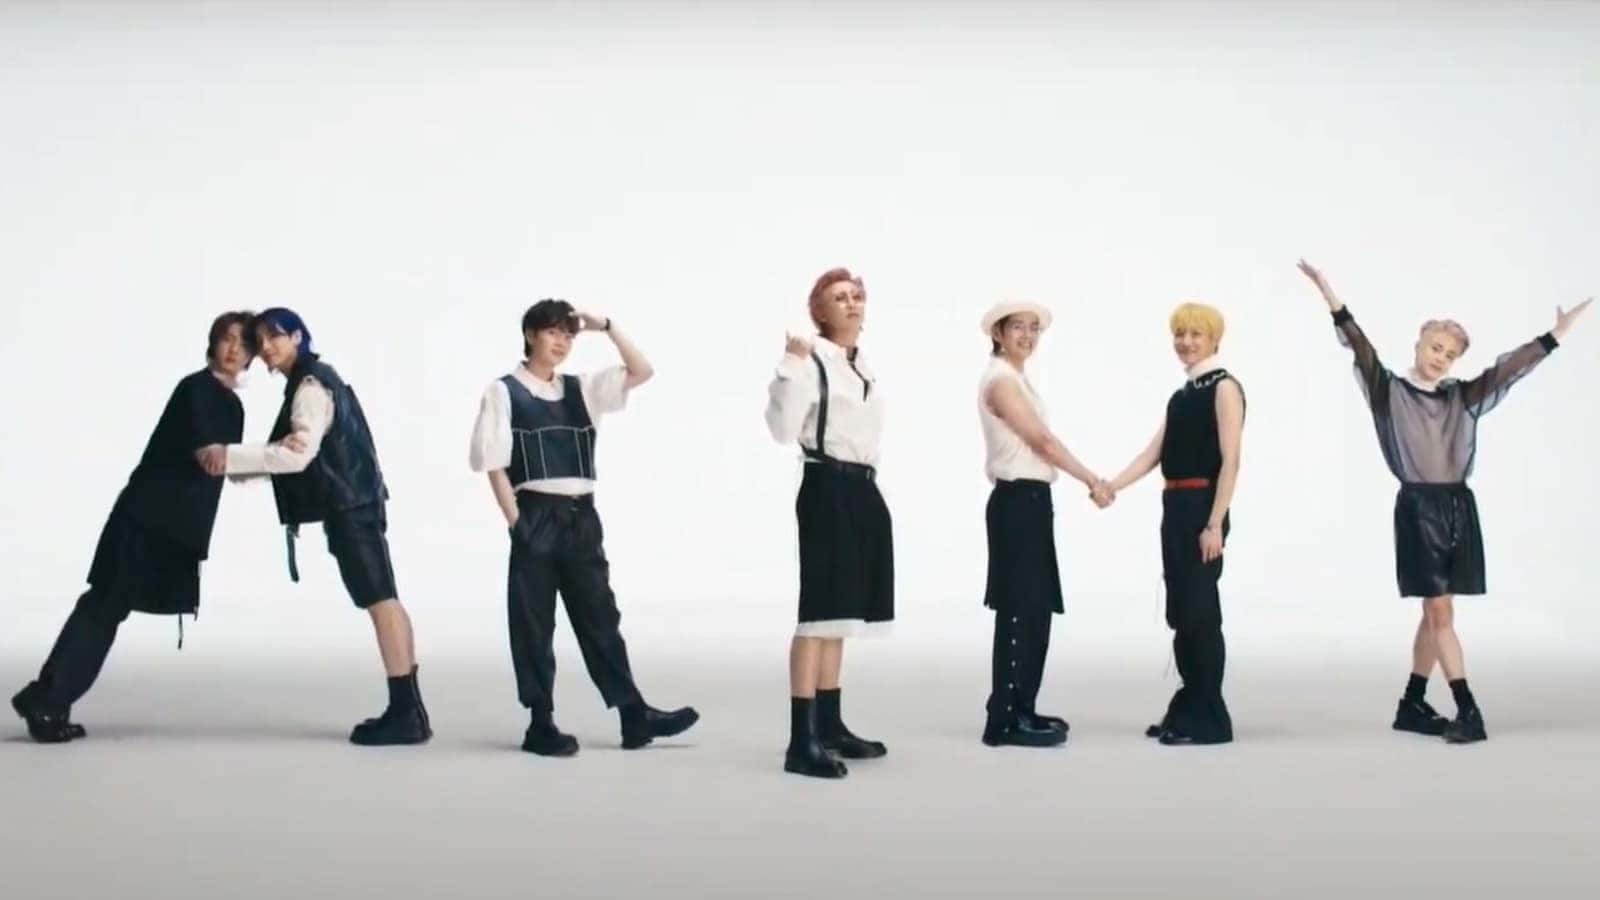 BTS "Butter" Music Video